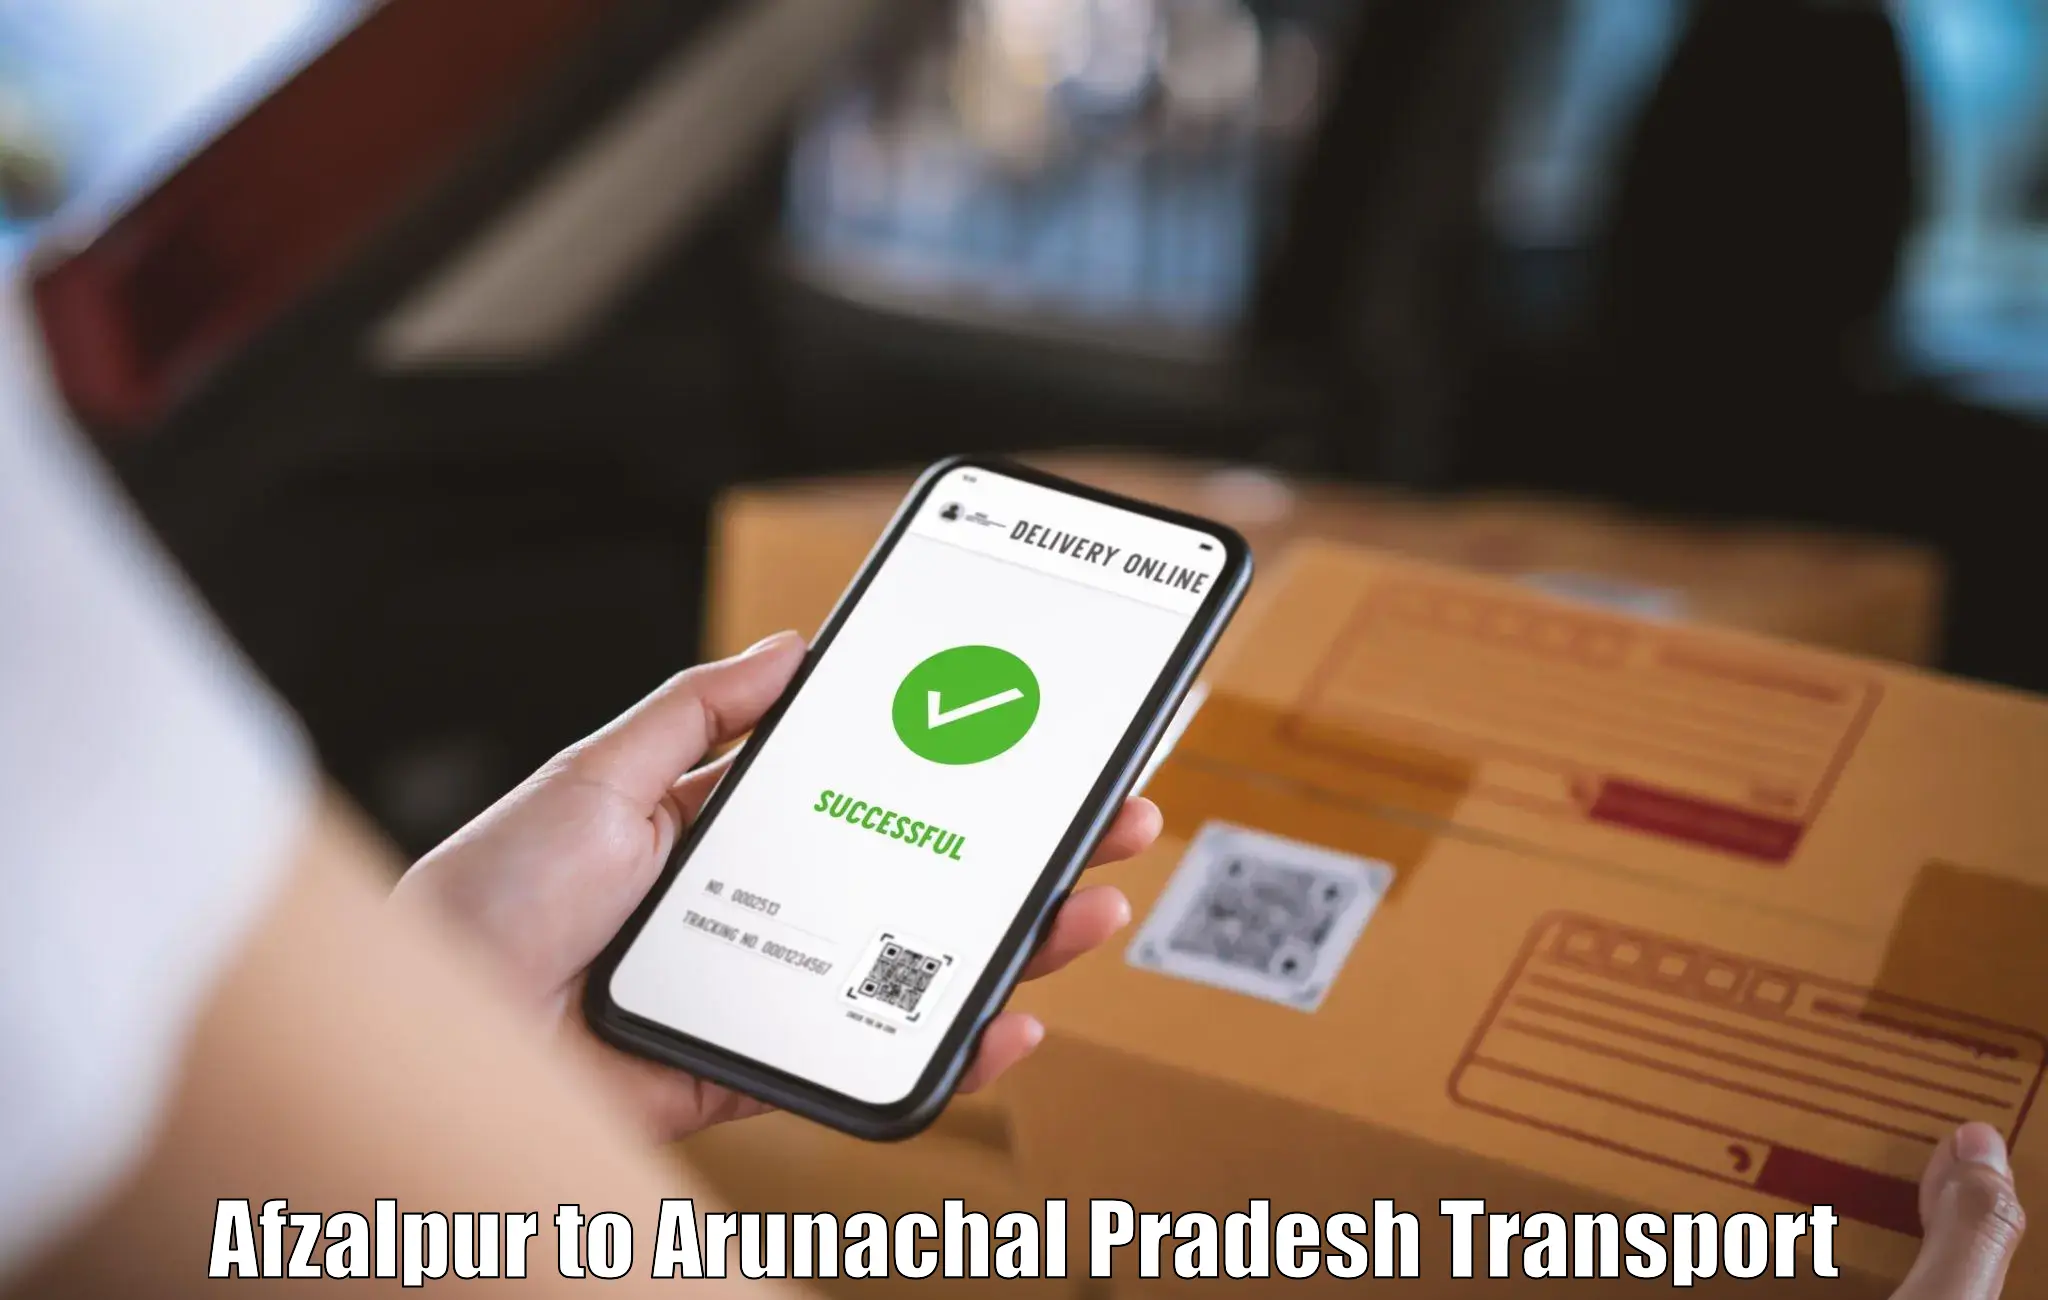 Part load transport service in India Afzalpur to Arunachal Pradesh